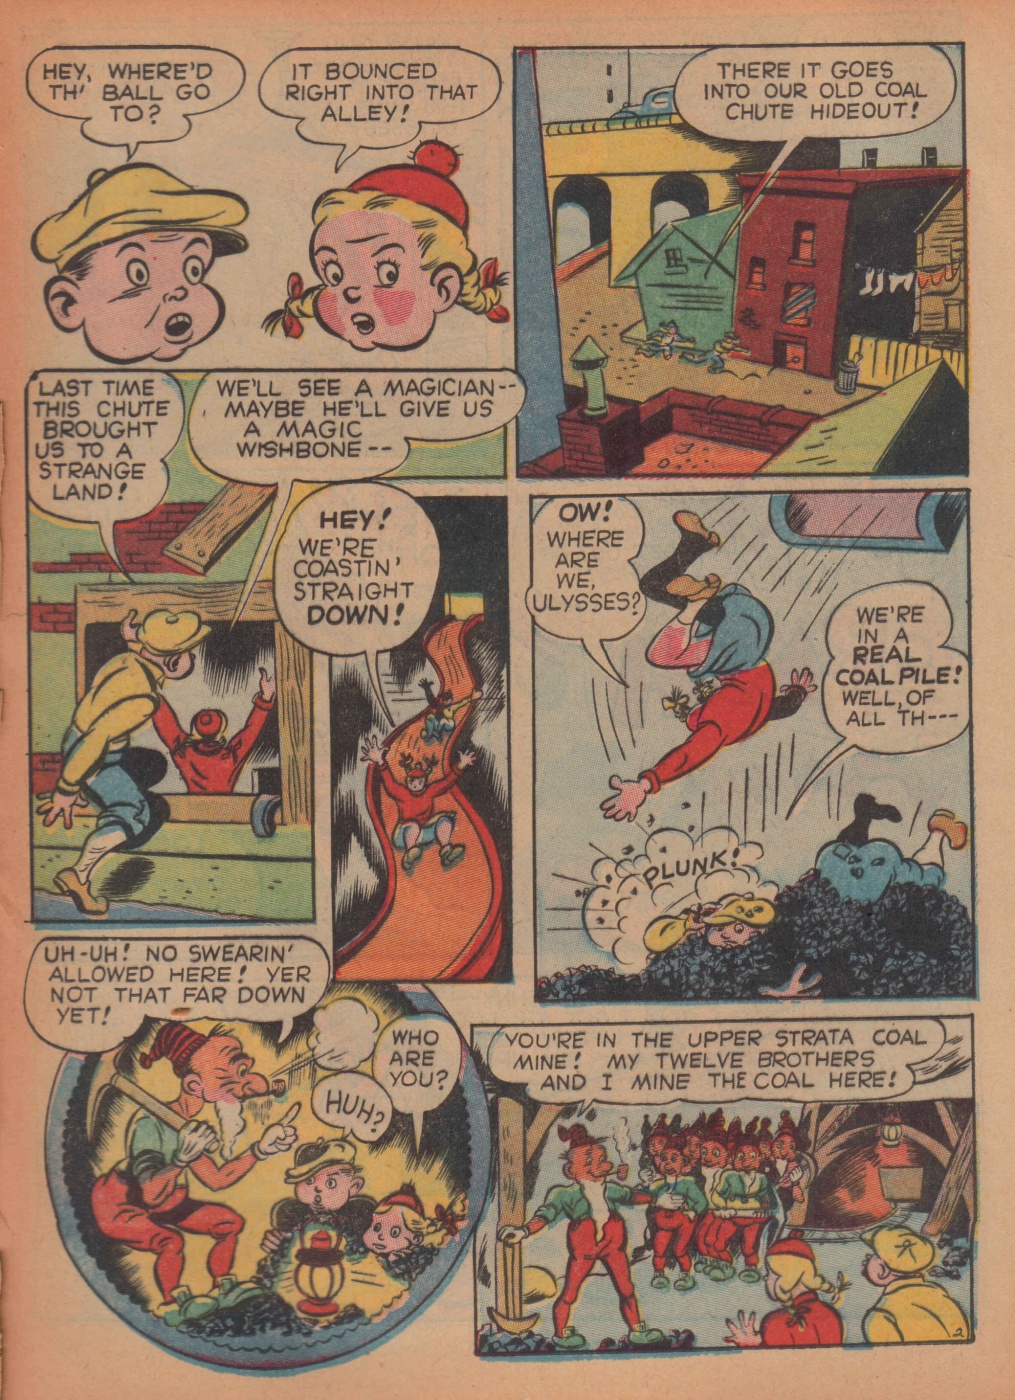 Super Dooper Funny Comics (25)